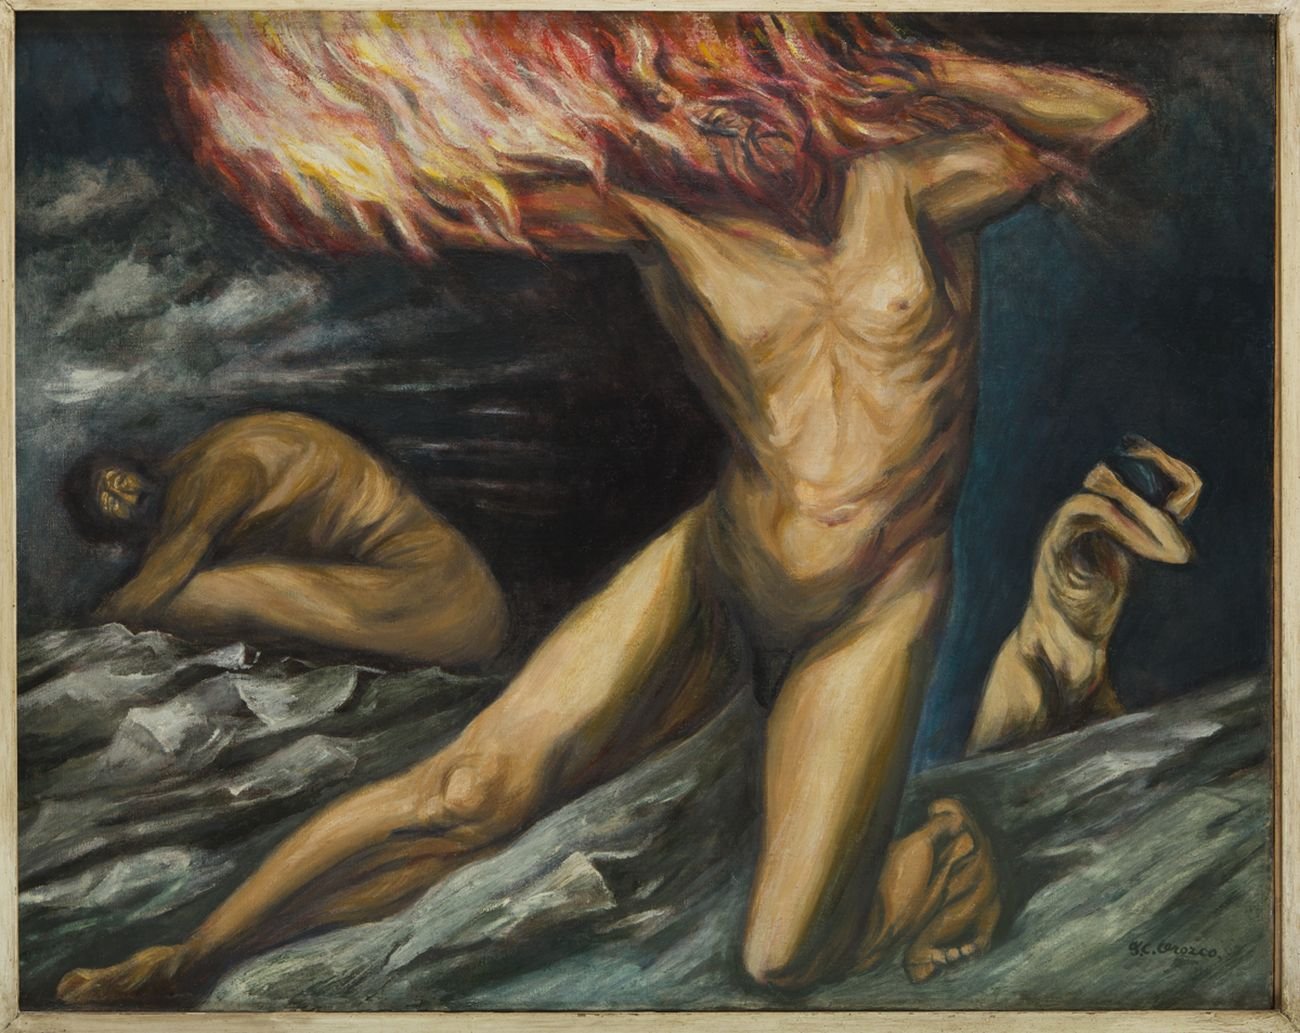 José Clemente Orozco, Prometeo, 1944, olio su tela, Museo de Arte Carrillo Gil